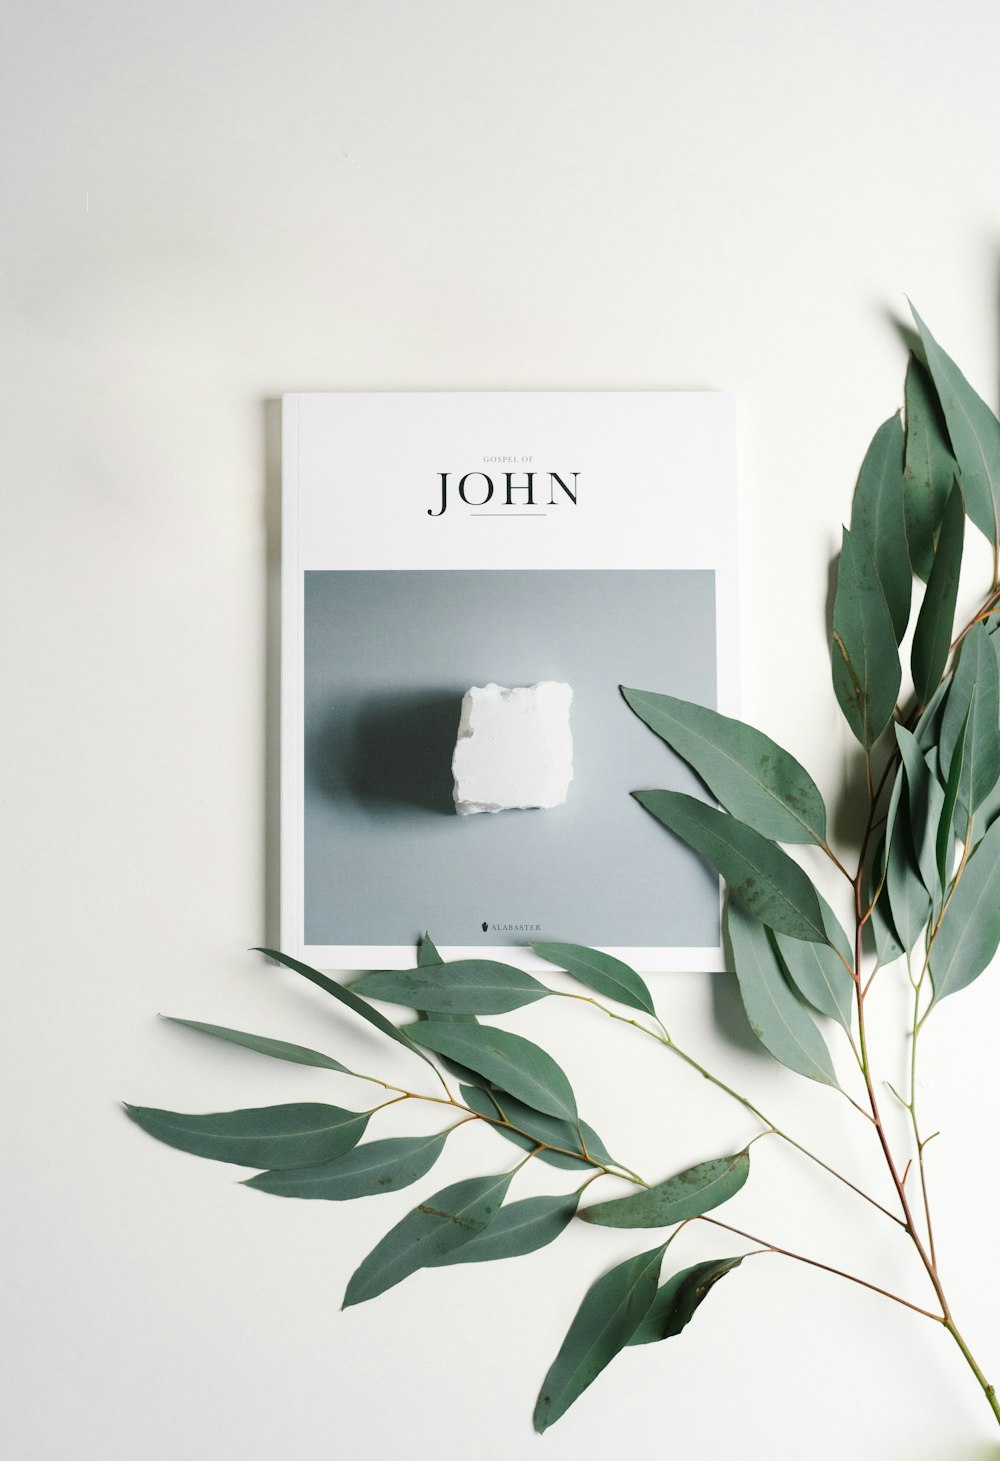 John-Karte und grünblättrige Pflanze